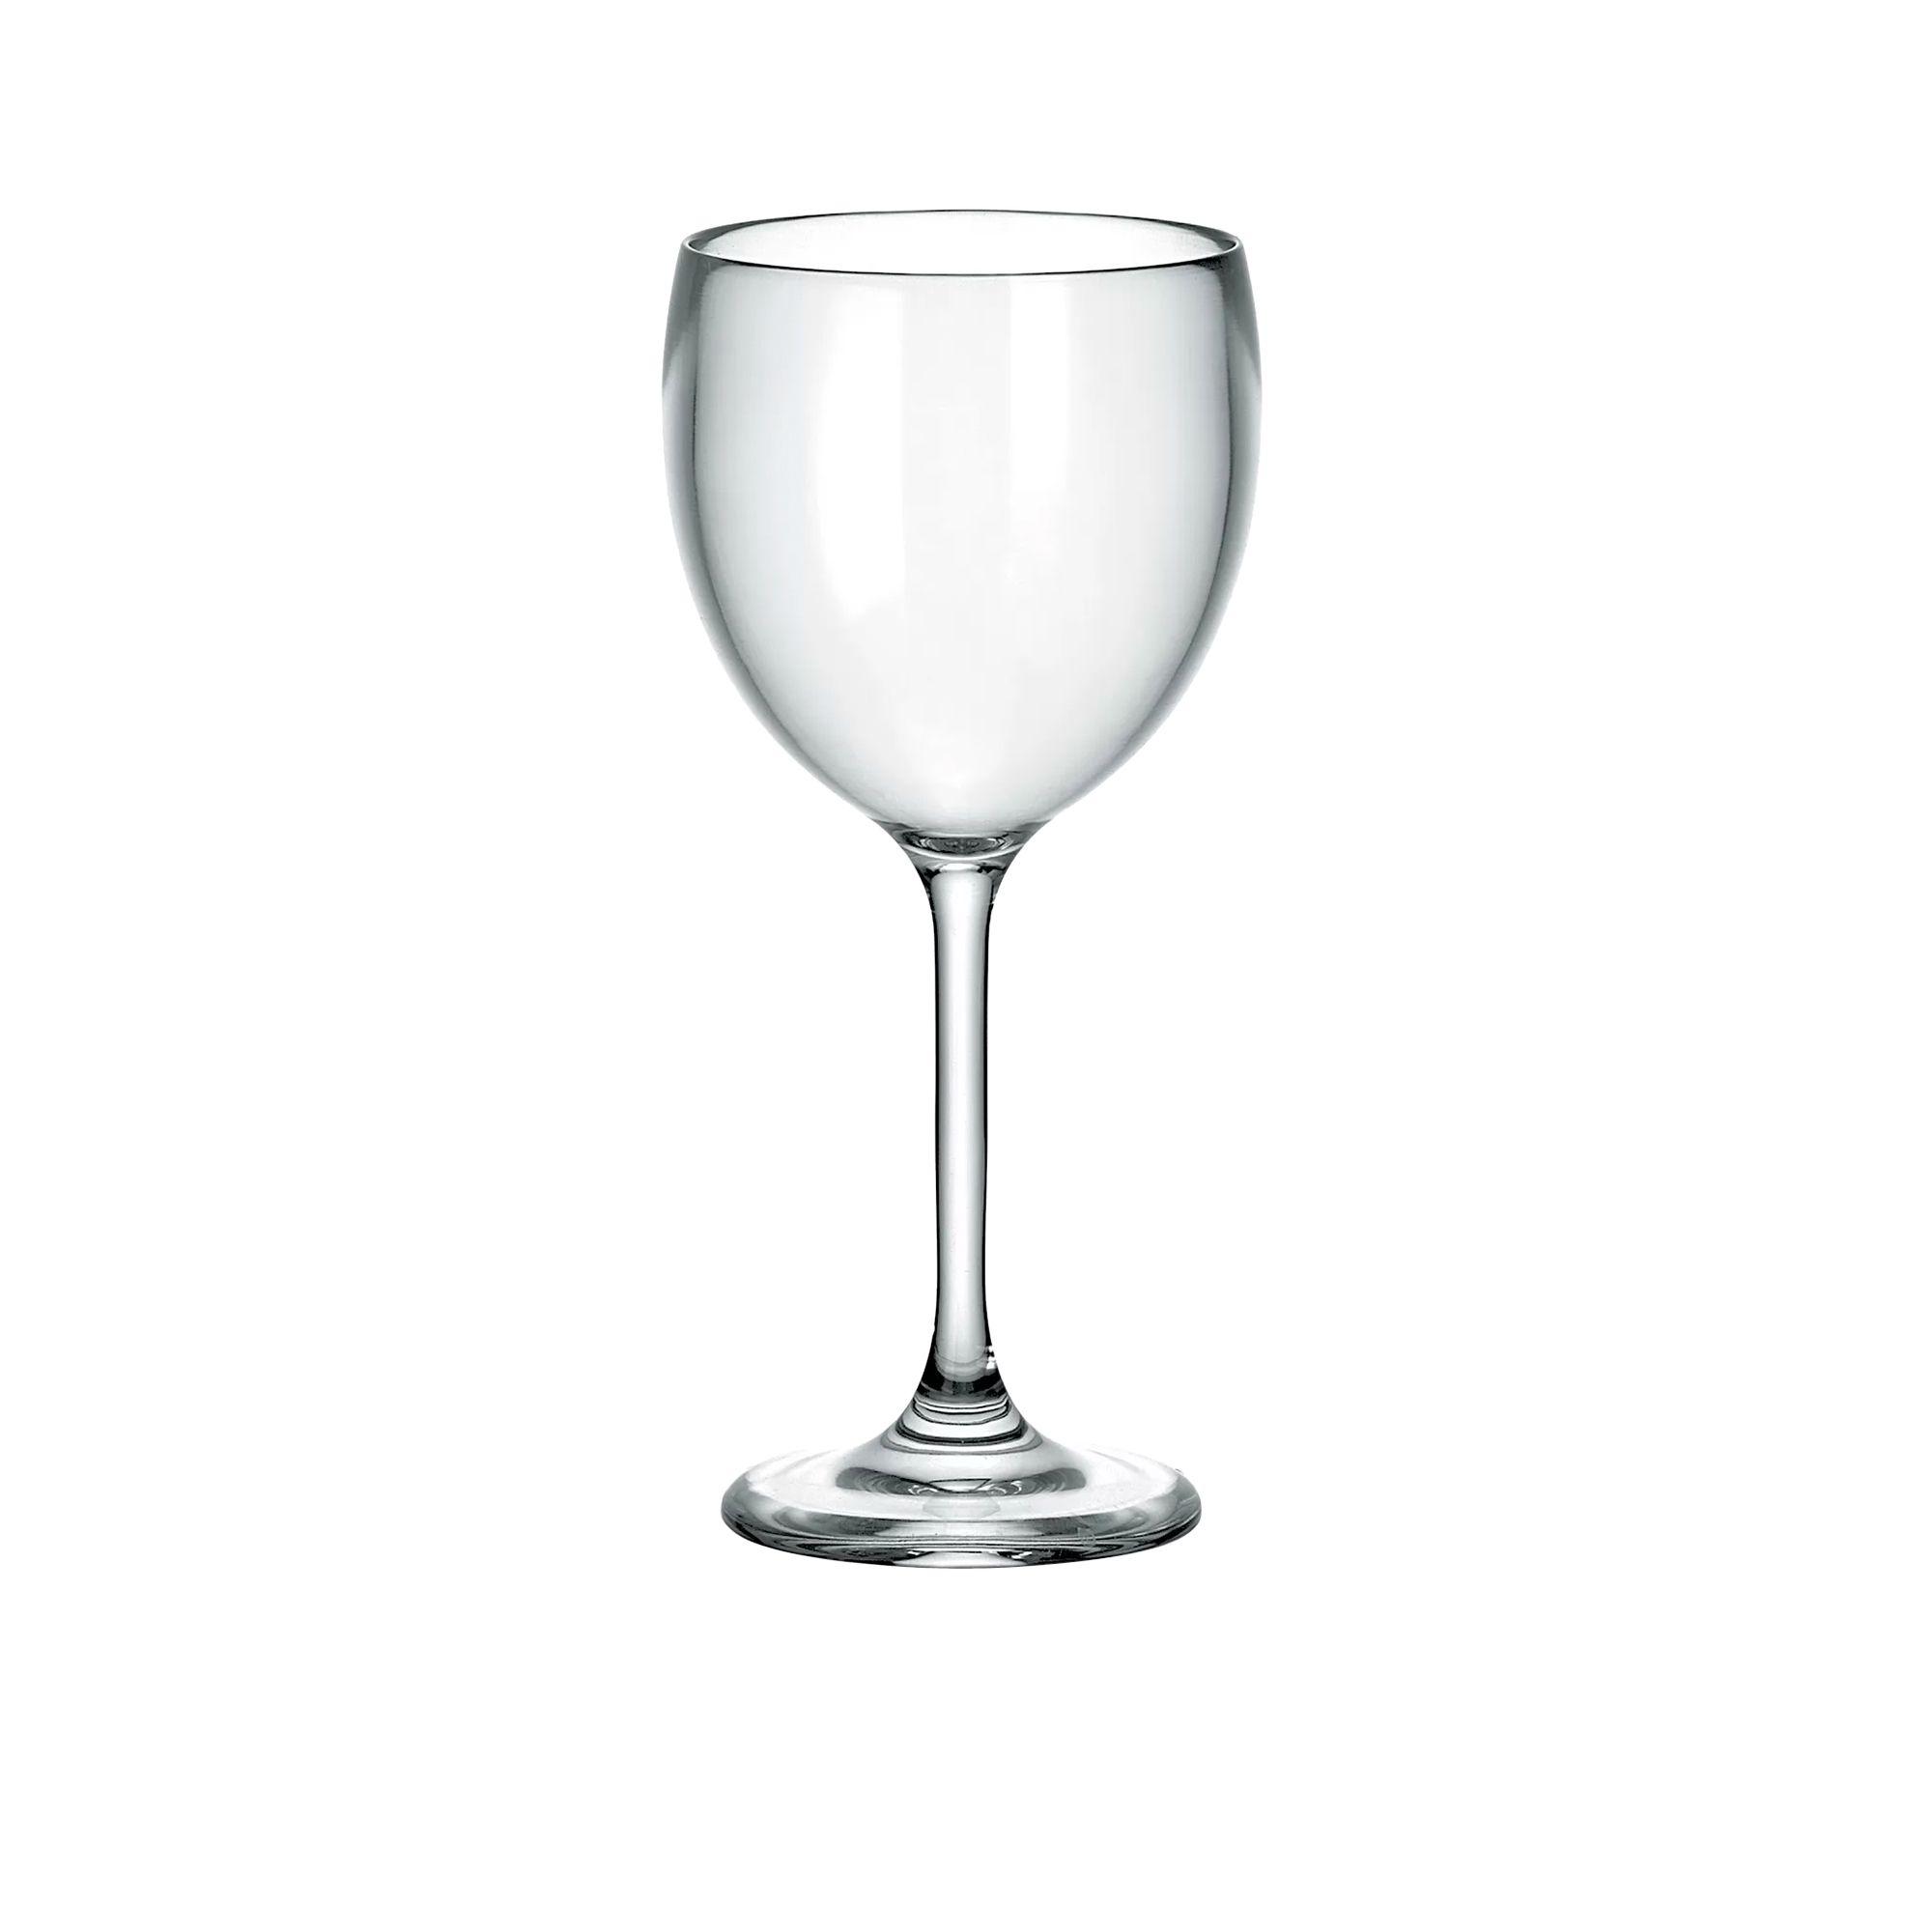 Guzzini Wine Glass 300ml Set of 6 Image 2